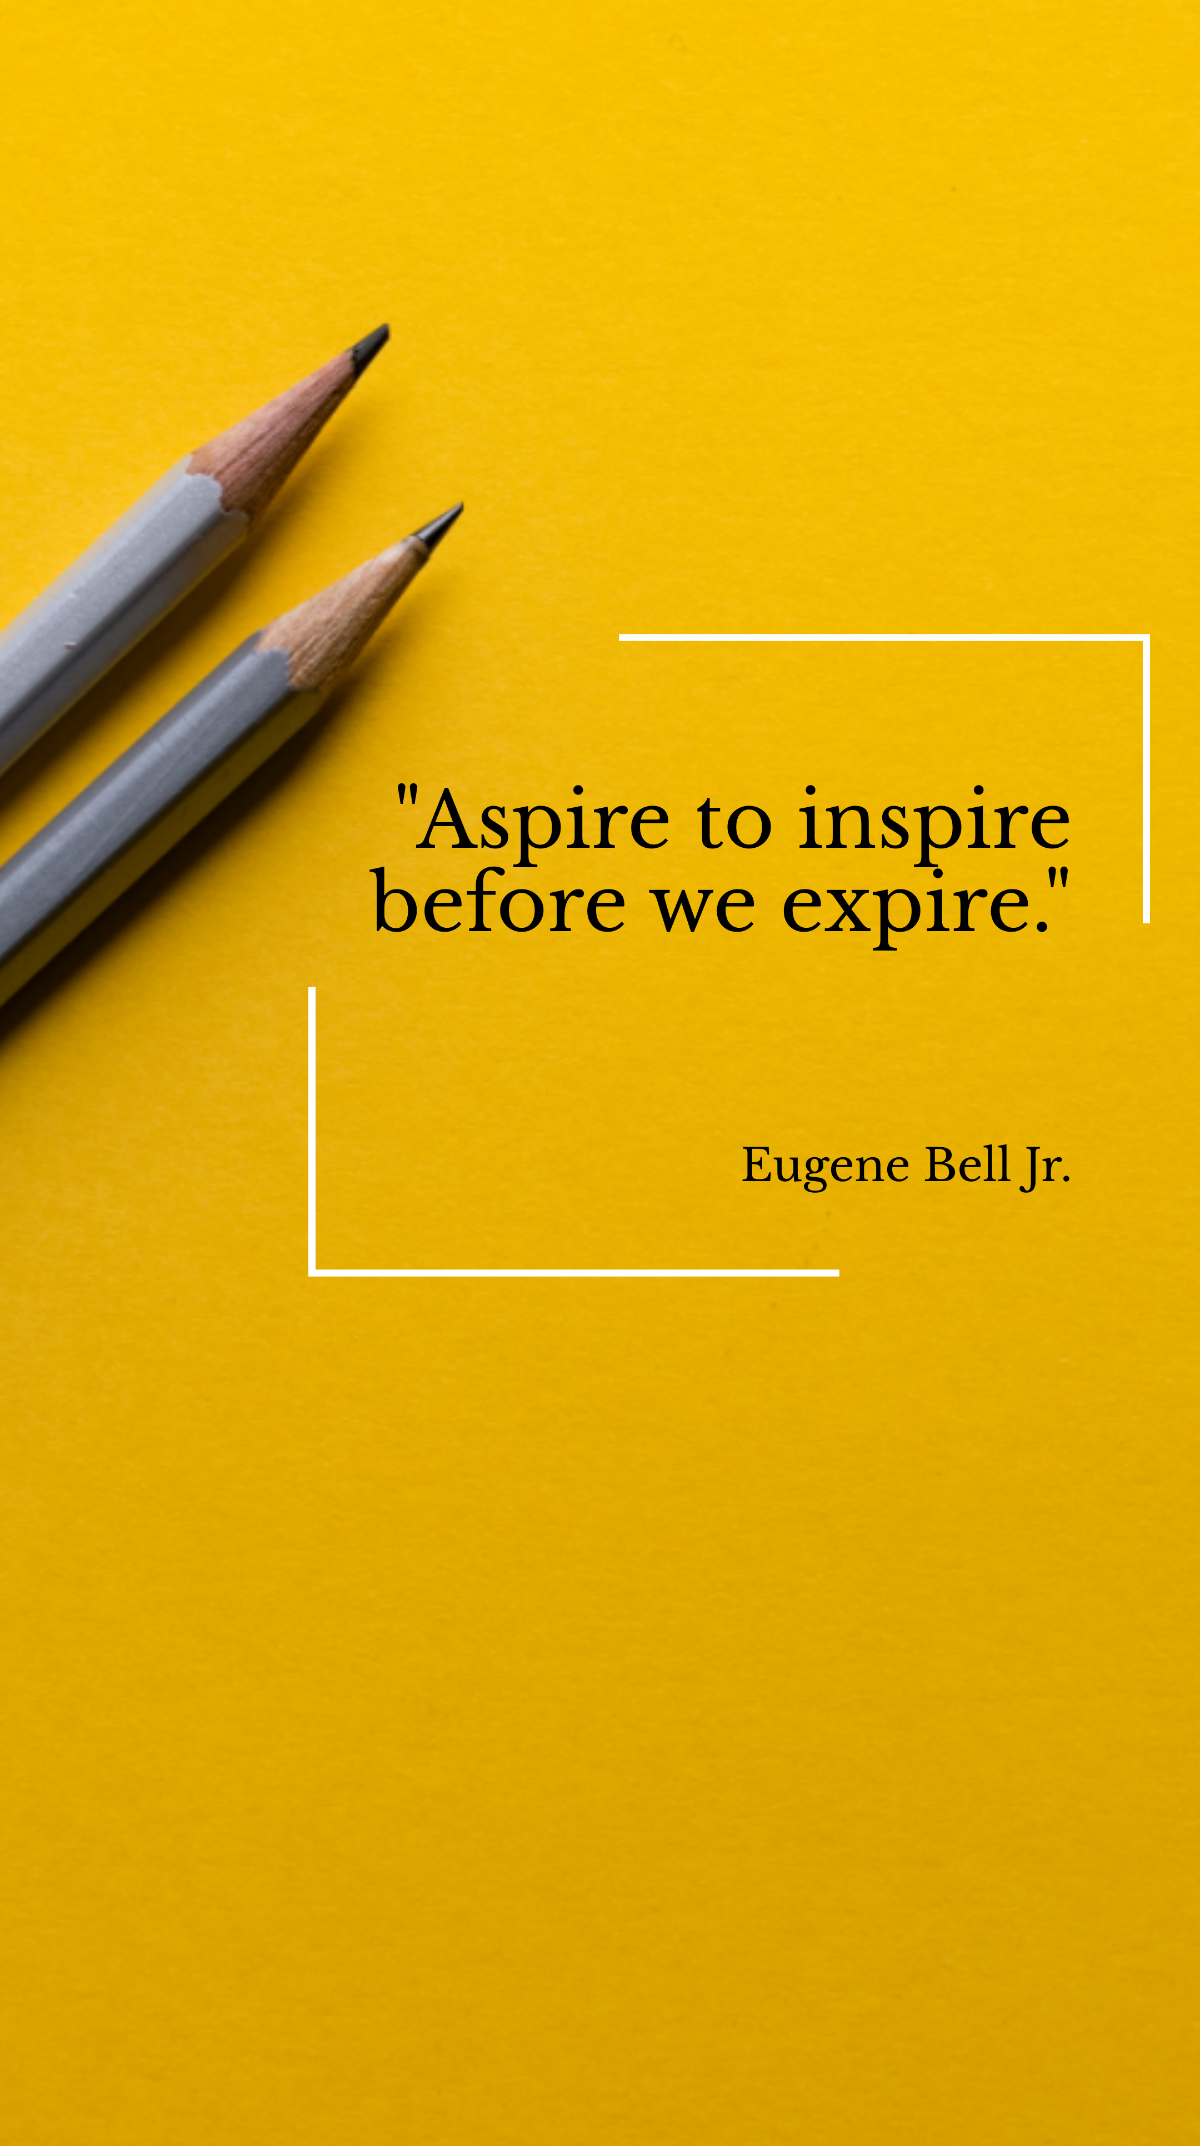 Eugene Bell Jr. - Aspire to inspire before we expire